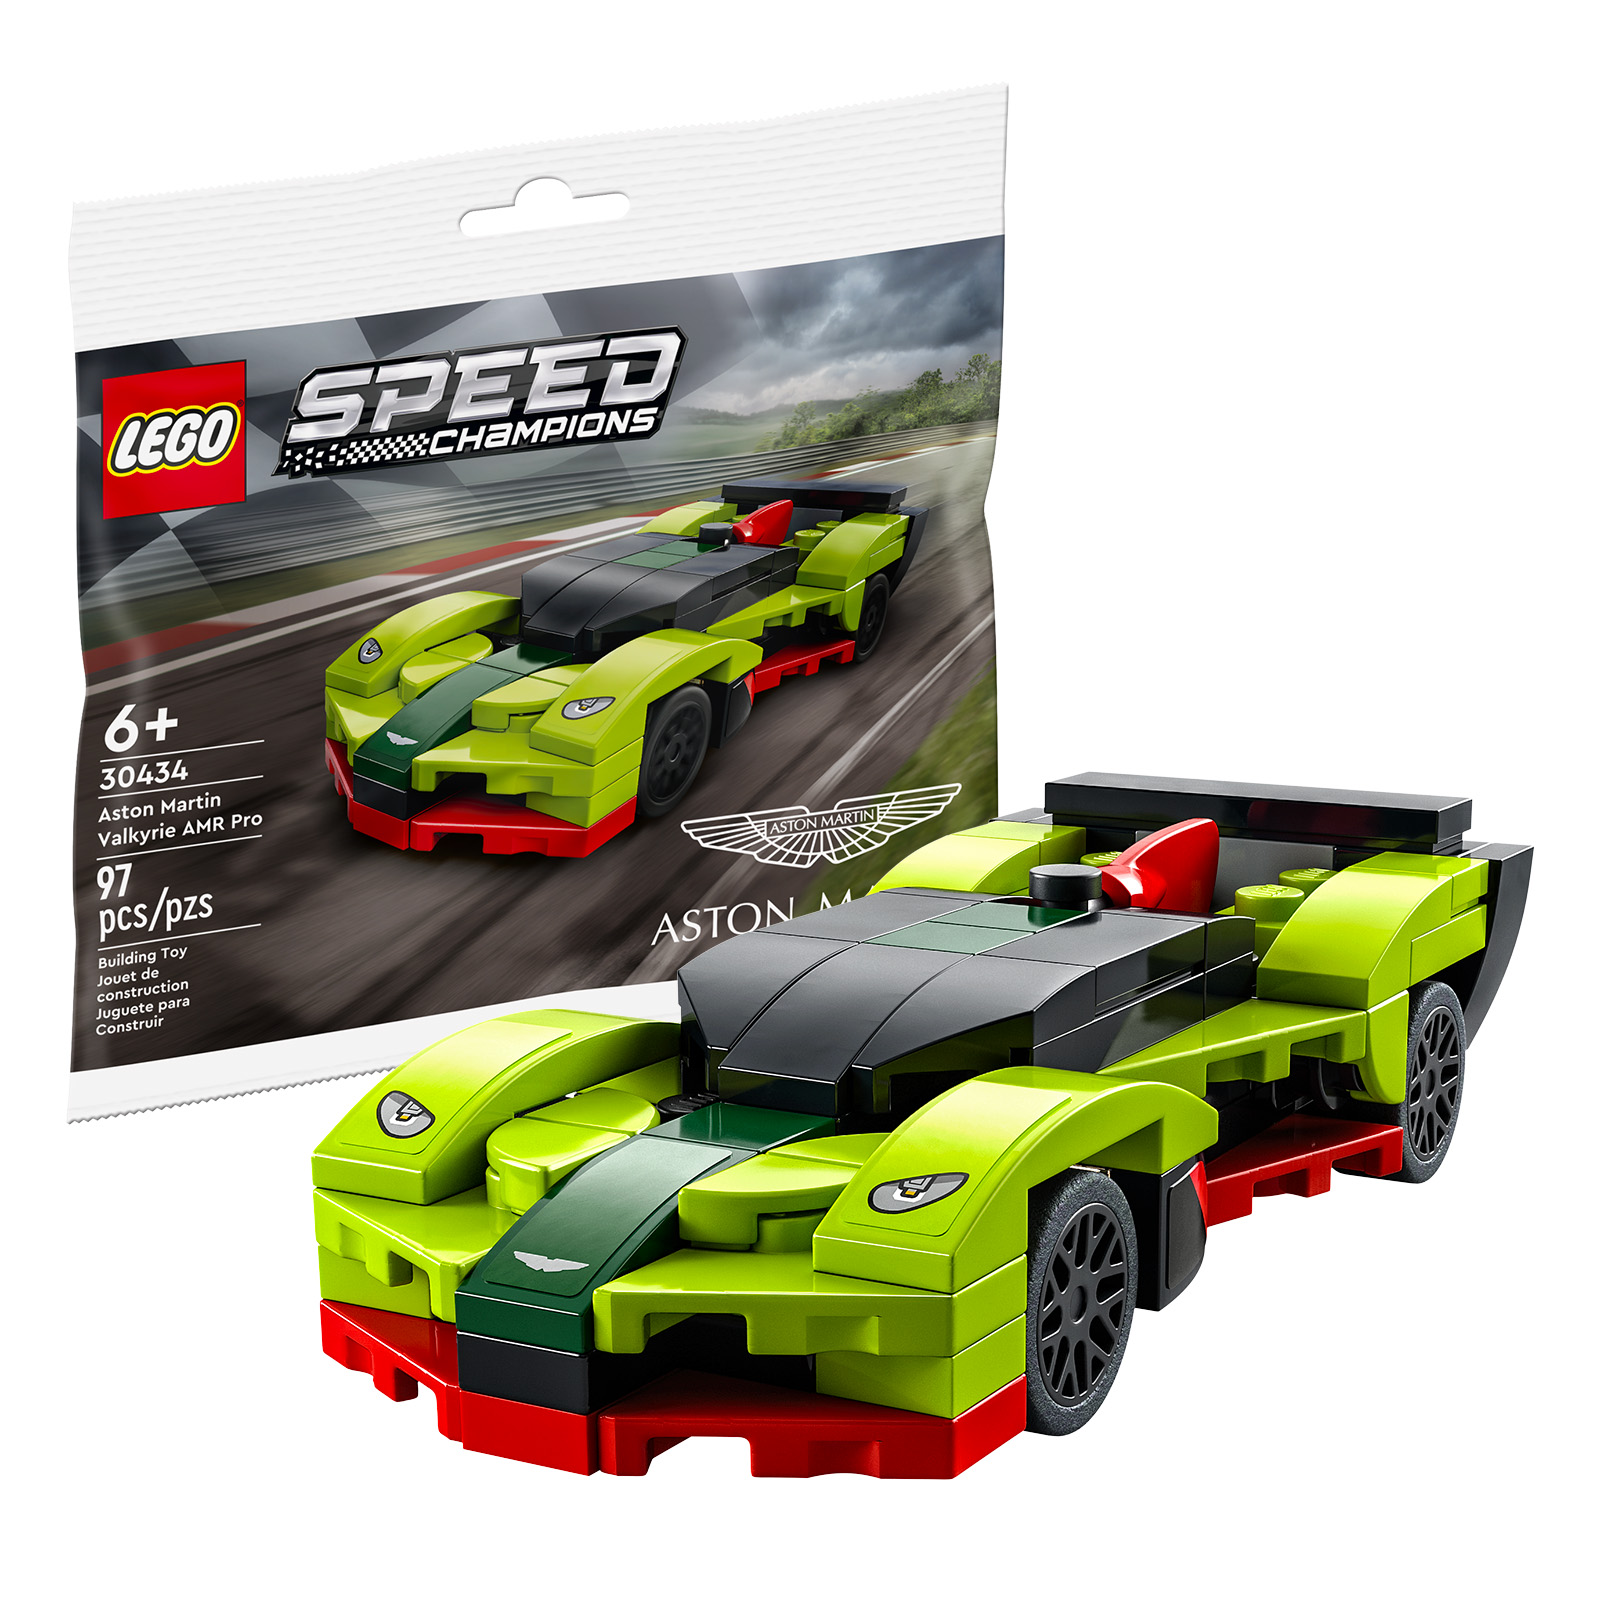 Am LEGO Shop: de LEGO Speed ​​​​Champions 30434 Aston Martin Valkyrie AMR Pro Polybag ass gratis bei Akeef iwwer 40 €